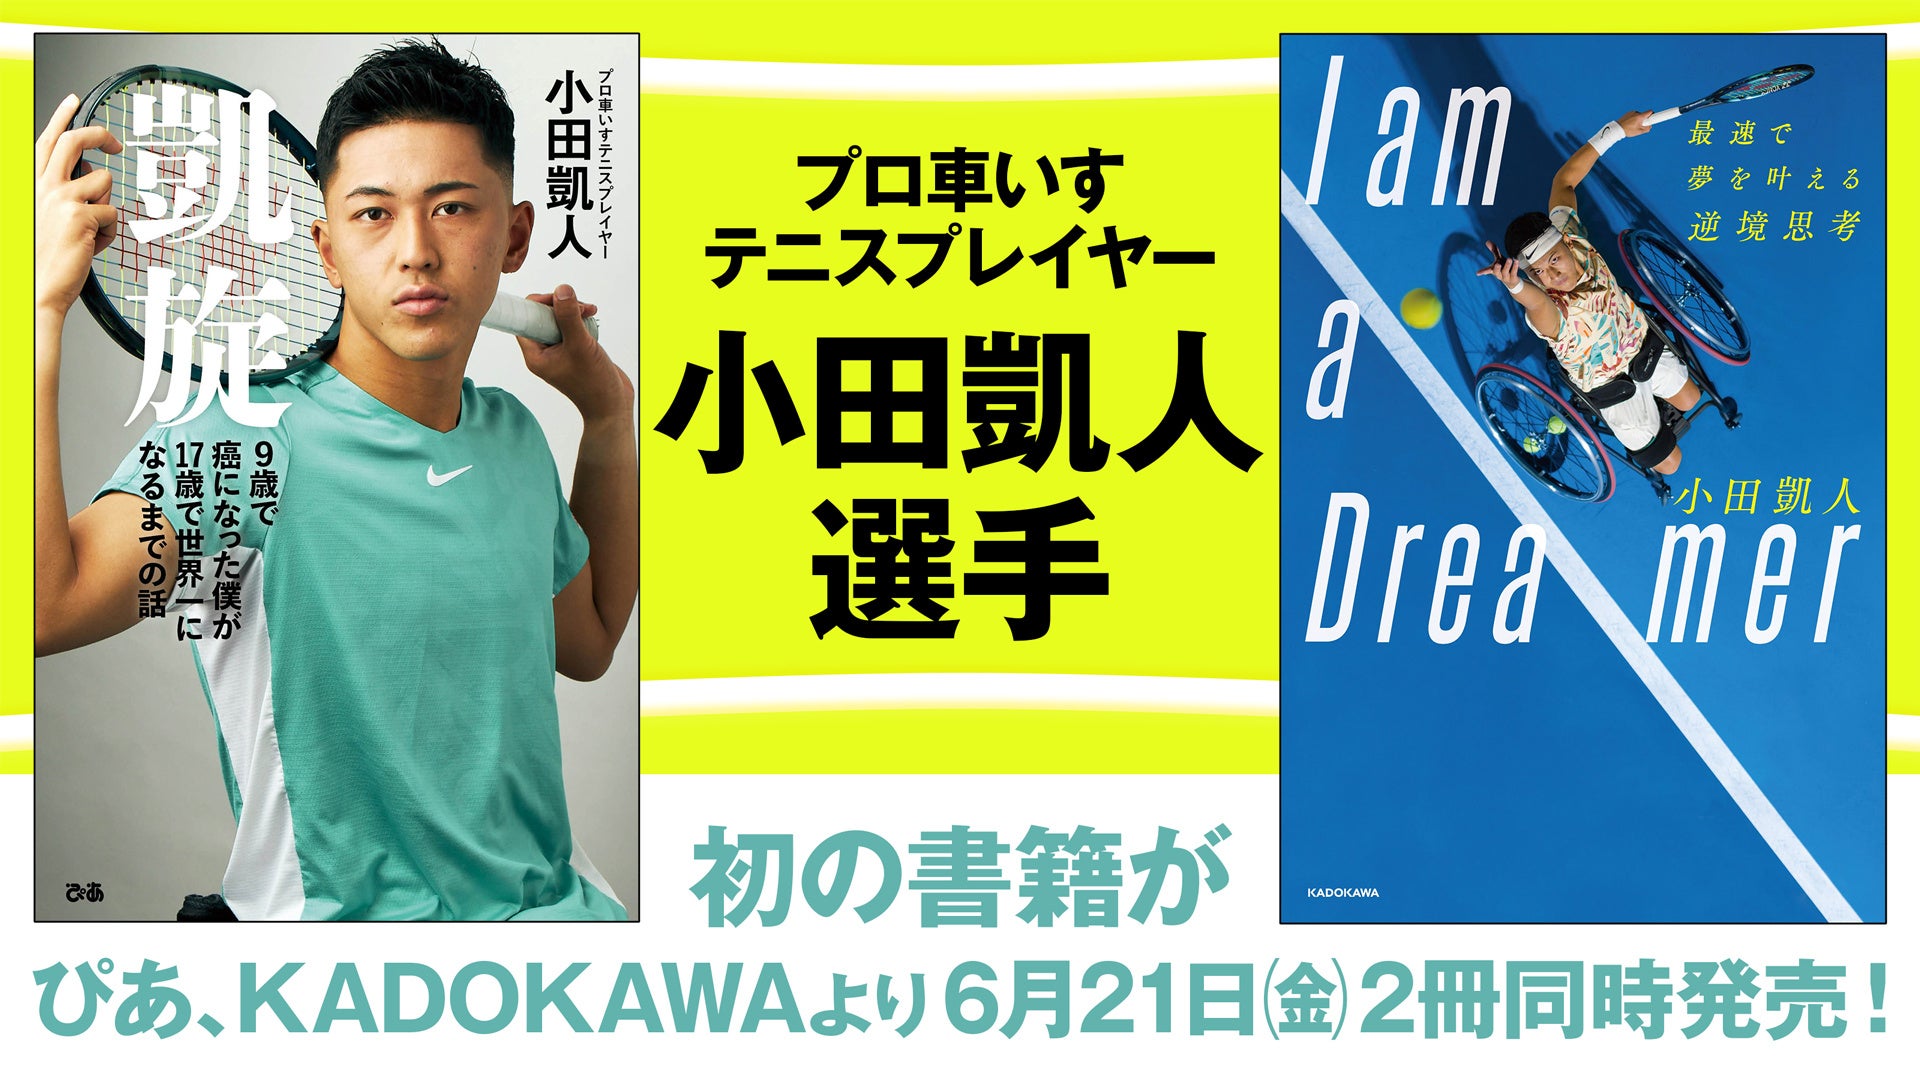 史上最年少記録を次々に更新する、注目のプロ車いすテニスプレイヤー・小田凱人選手。初書籍がぴあとKADOKAWAから２冊同時刊行が決定！